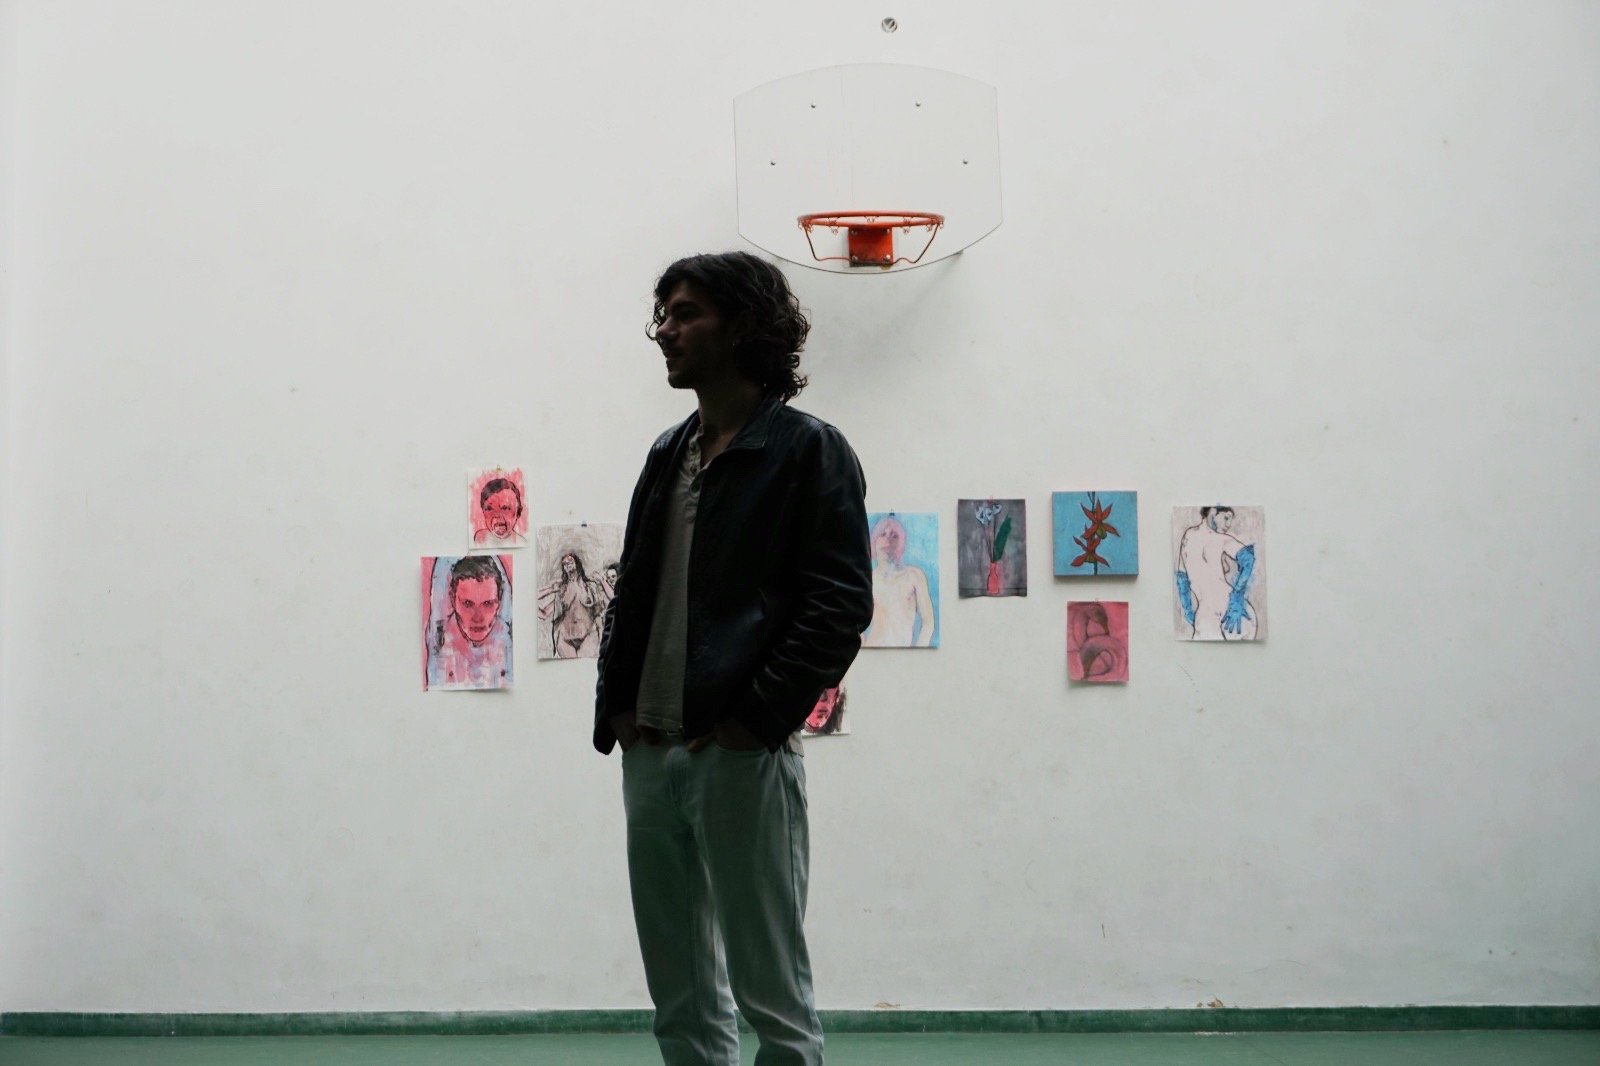 Emanuele Censi’ exhibition at Spazio Hangar